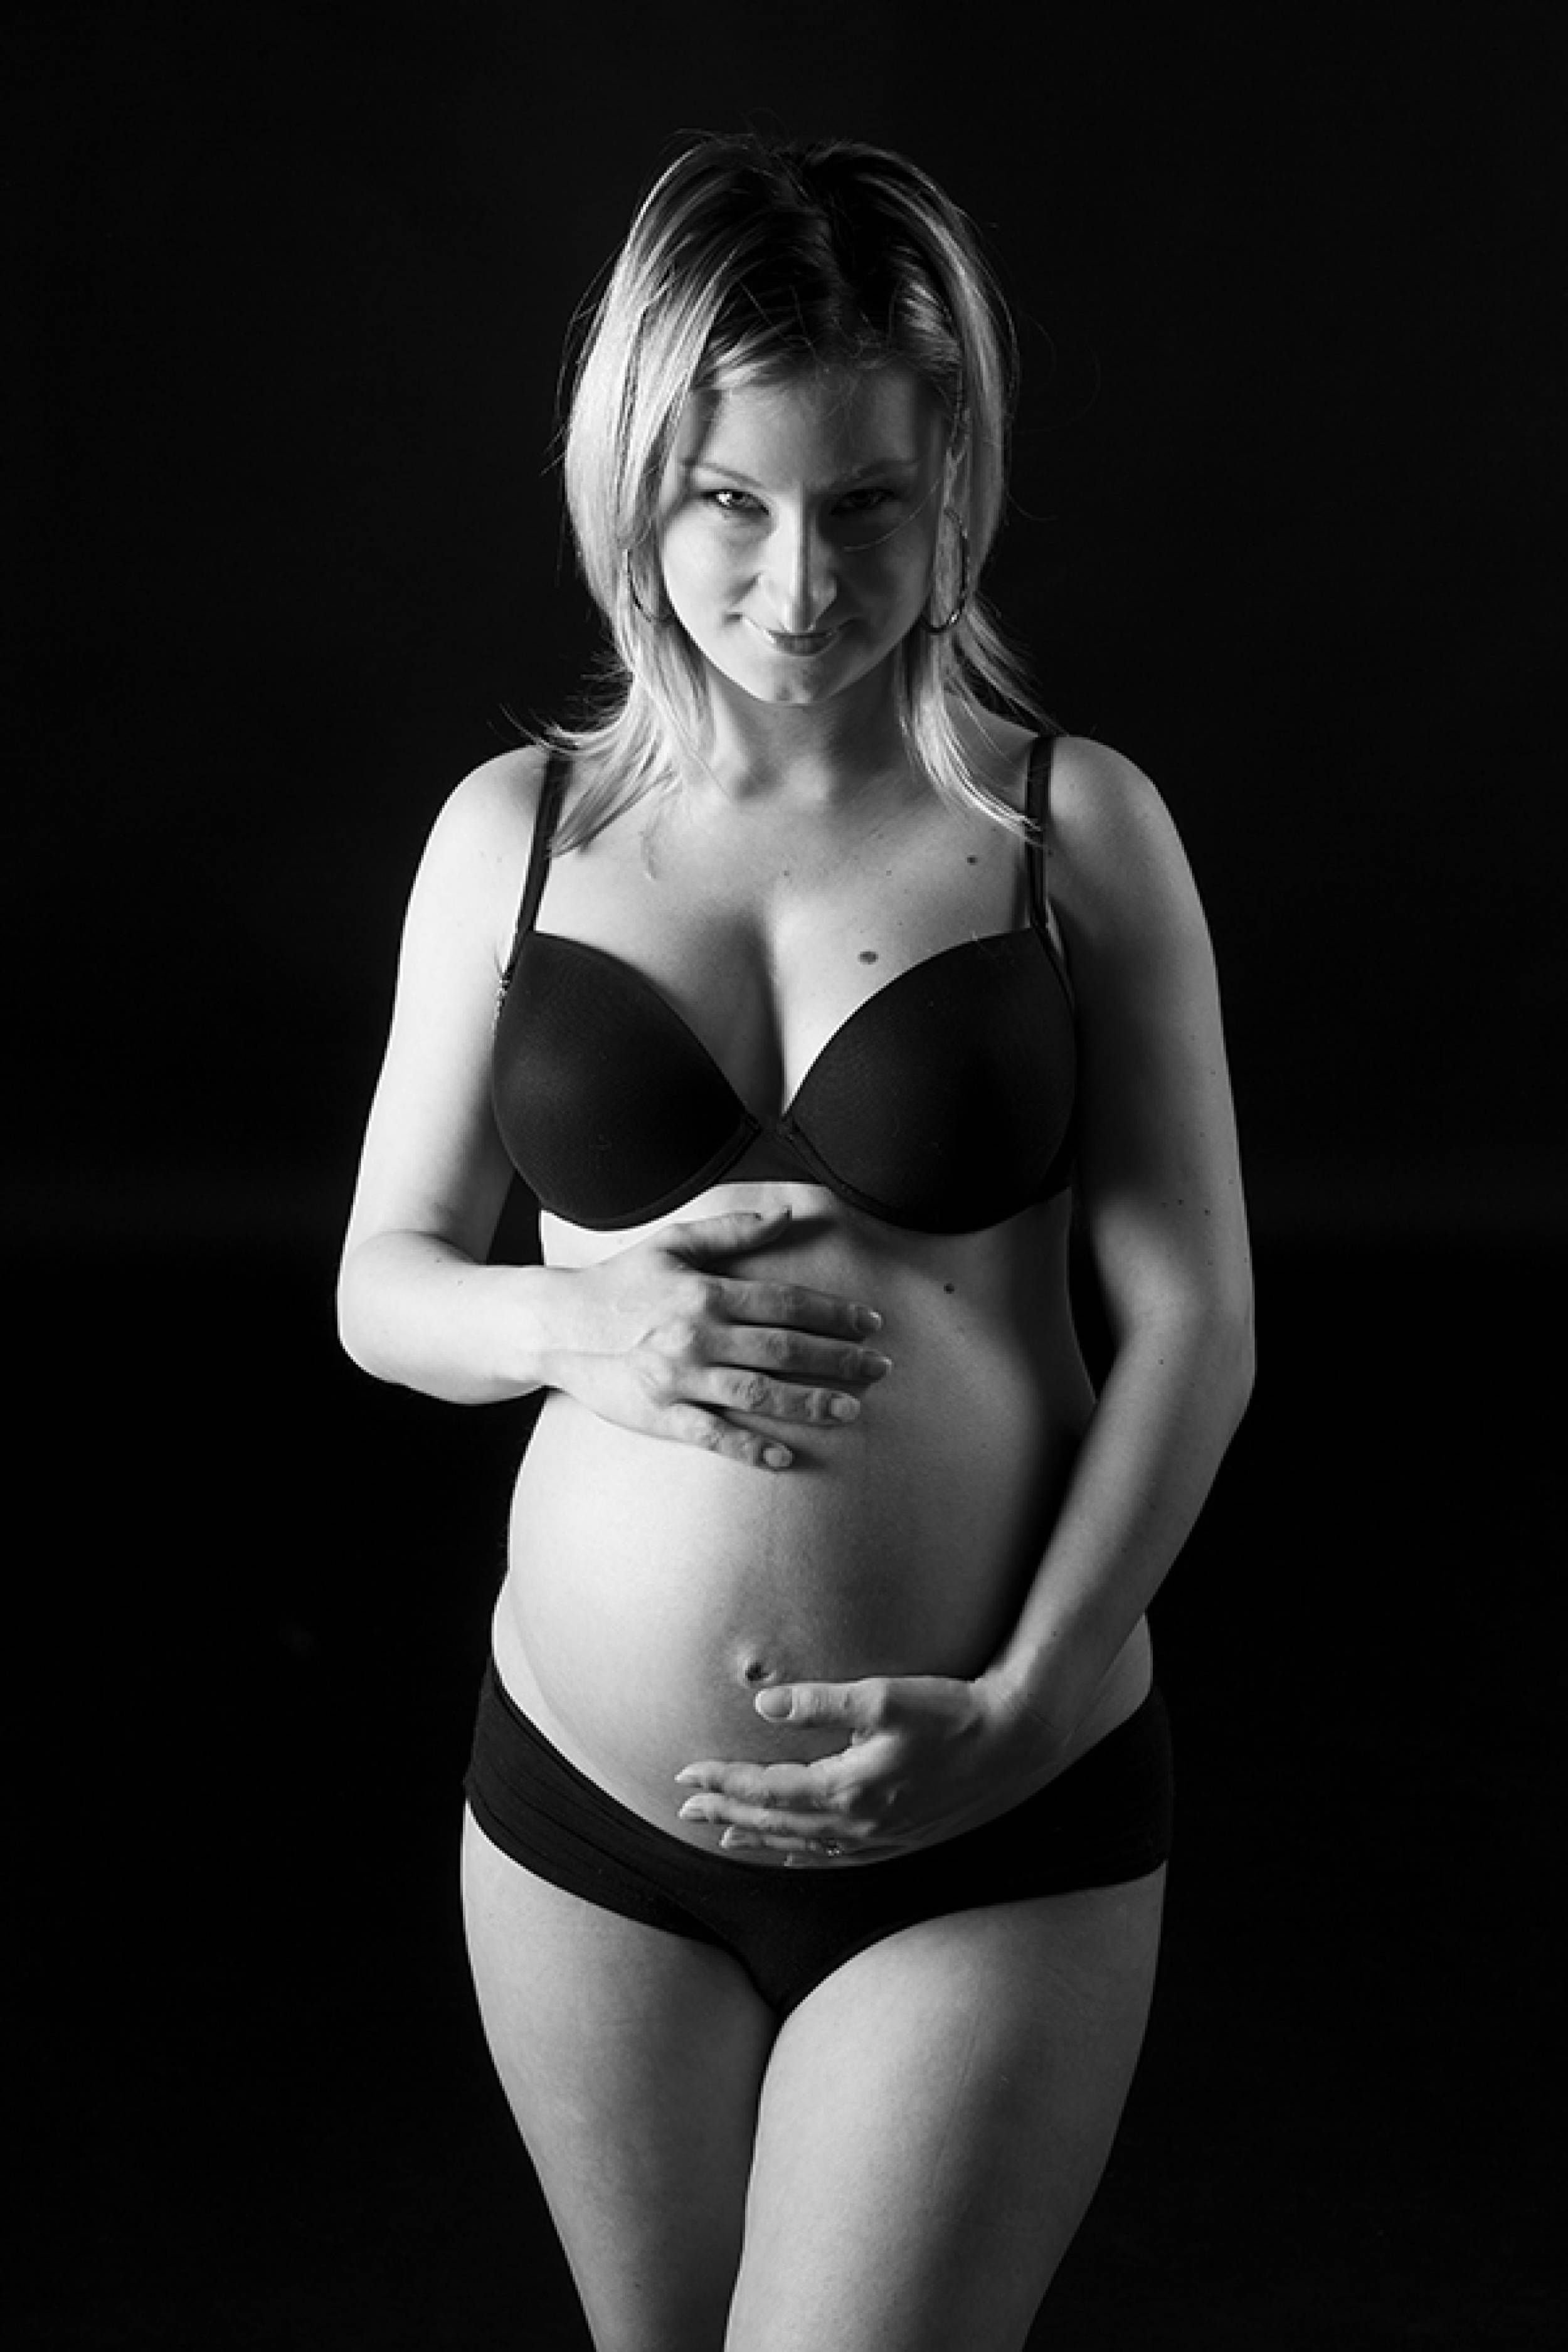 zwangerschapsfotografie-116_xgg7vtUjM_2U35aFpr0N.jpg